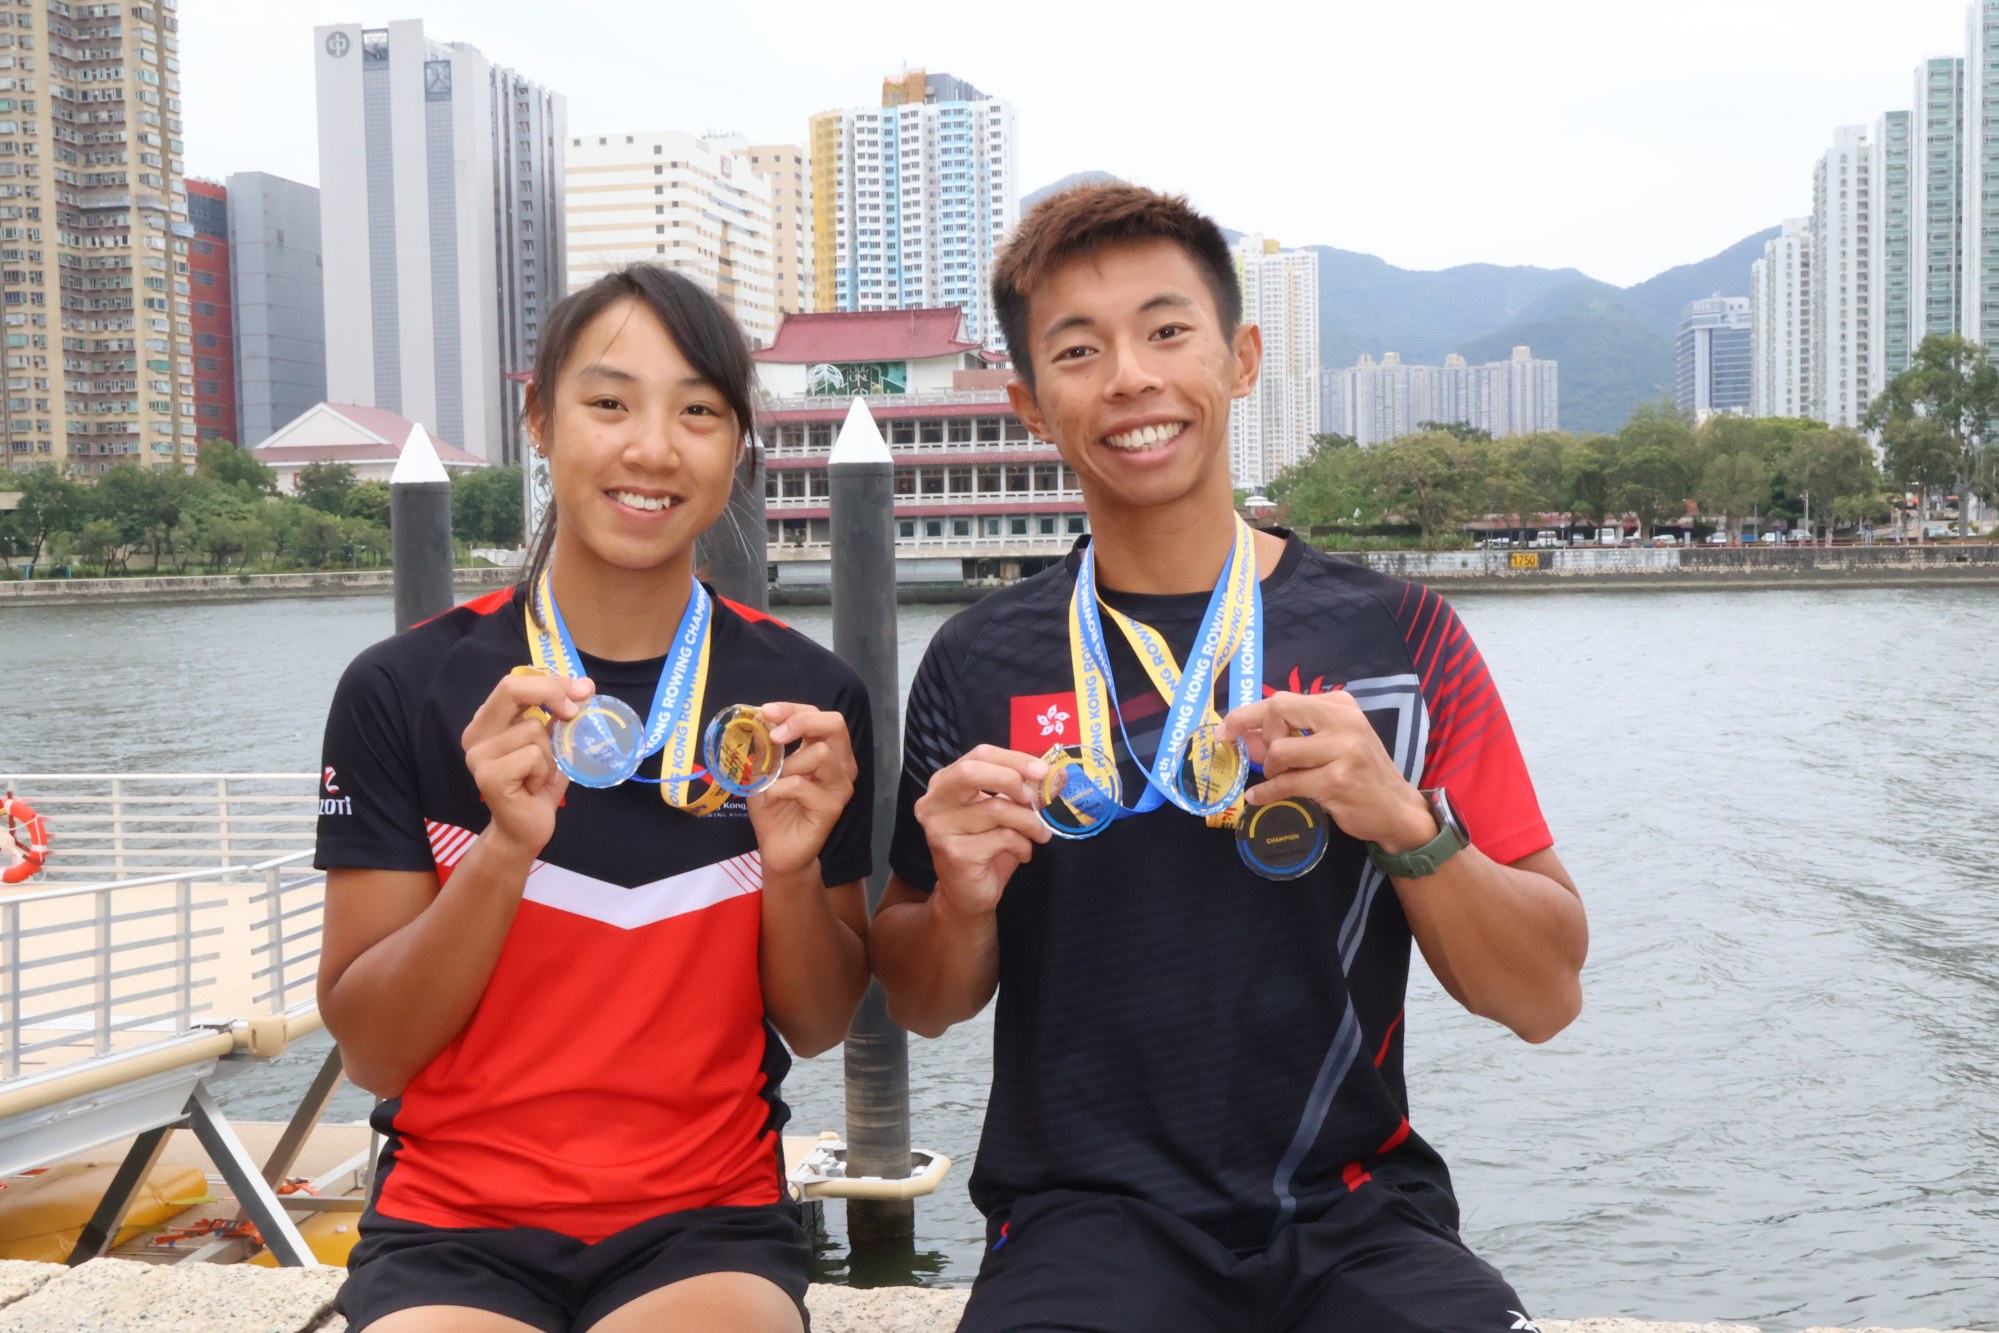 Asian Rowing Championships: Hong Kong’s Chiu targeting single scull ...